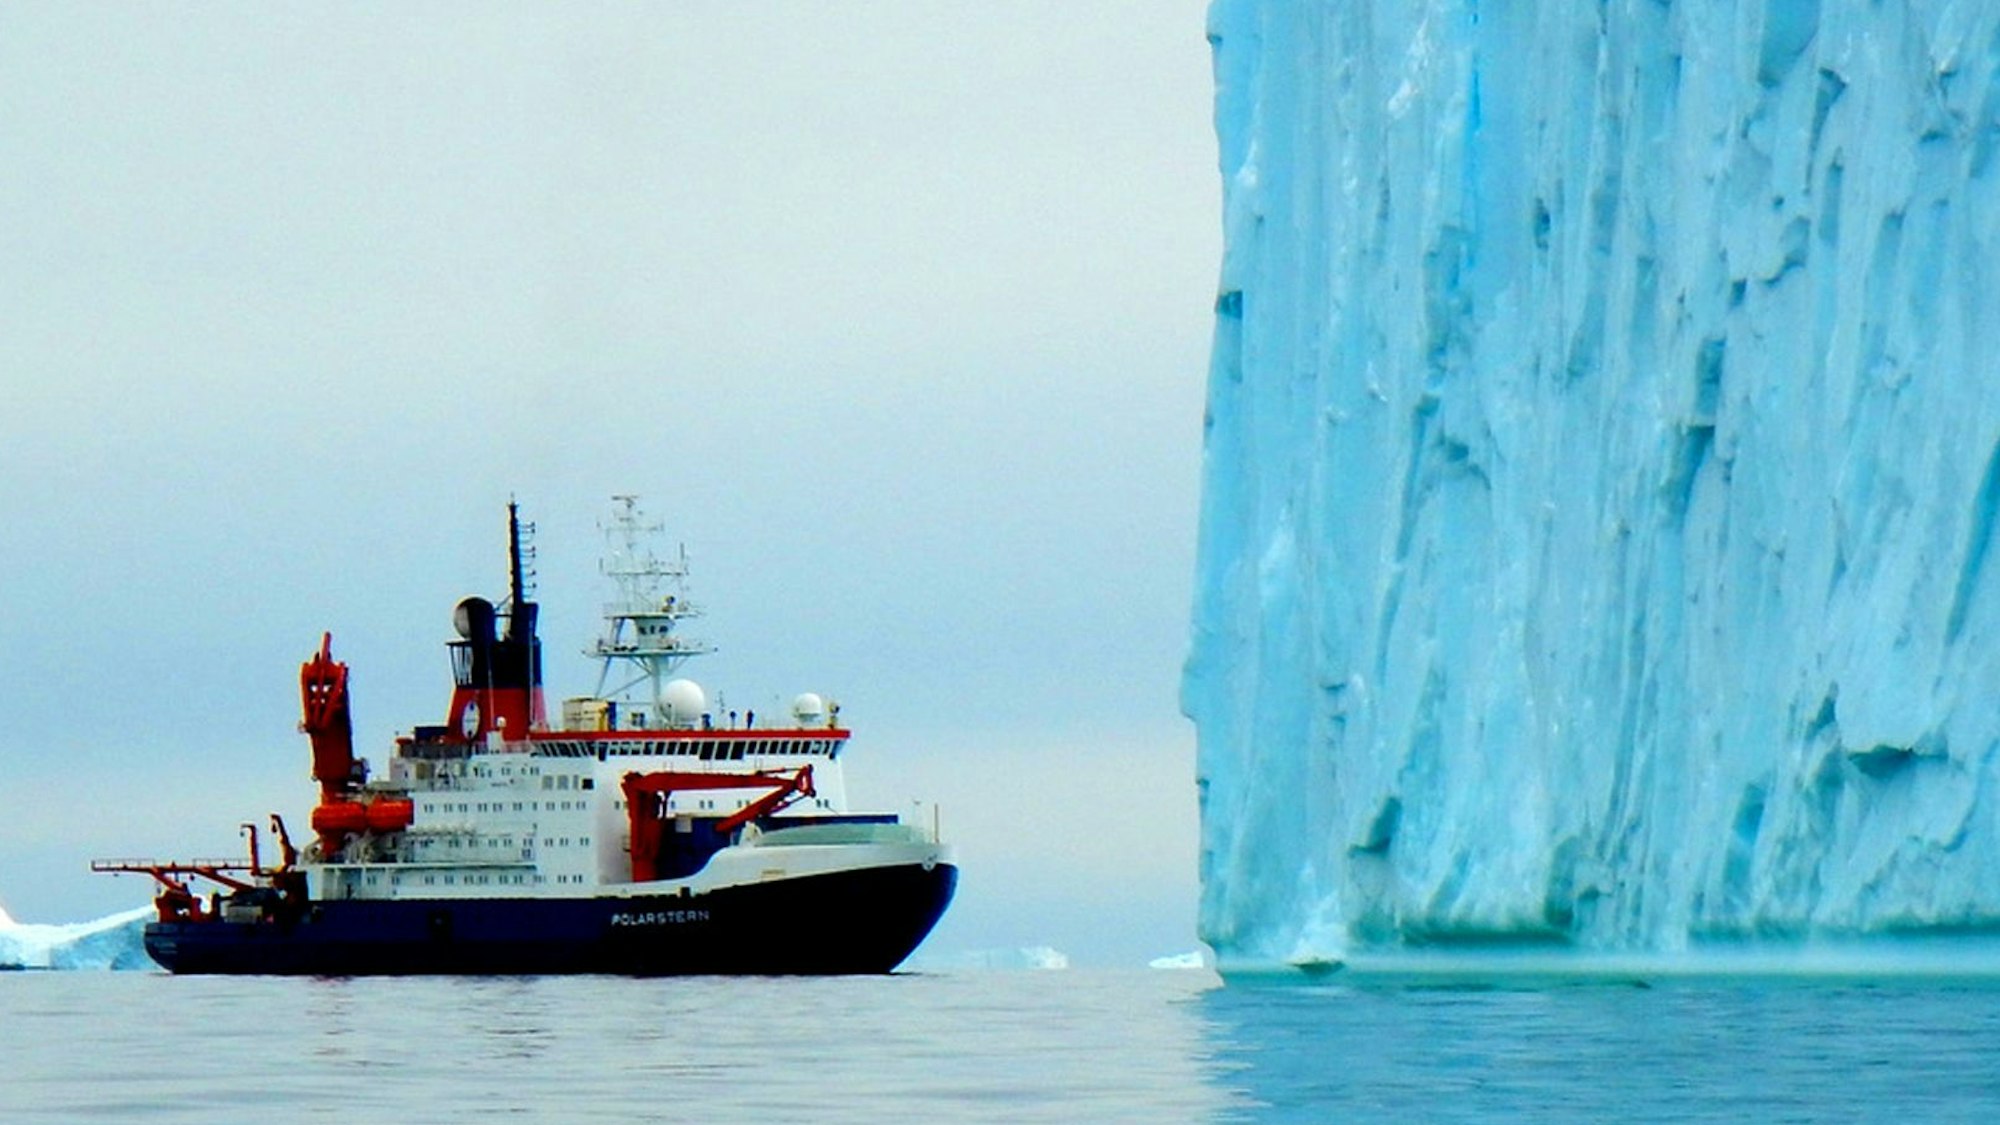 Ein Forschungsschiff fährt in der Antarktis vor einem großen blauen Eisberg entlang. Im Hintergrund sind weitere Eisschollen zu sehen. (Symbolbild)